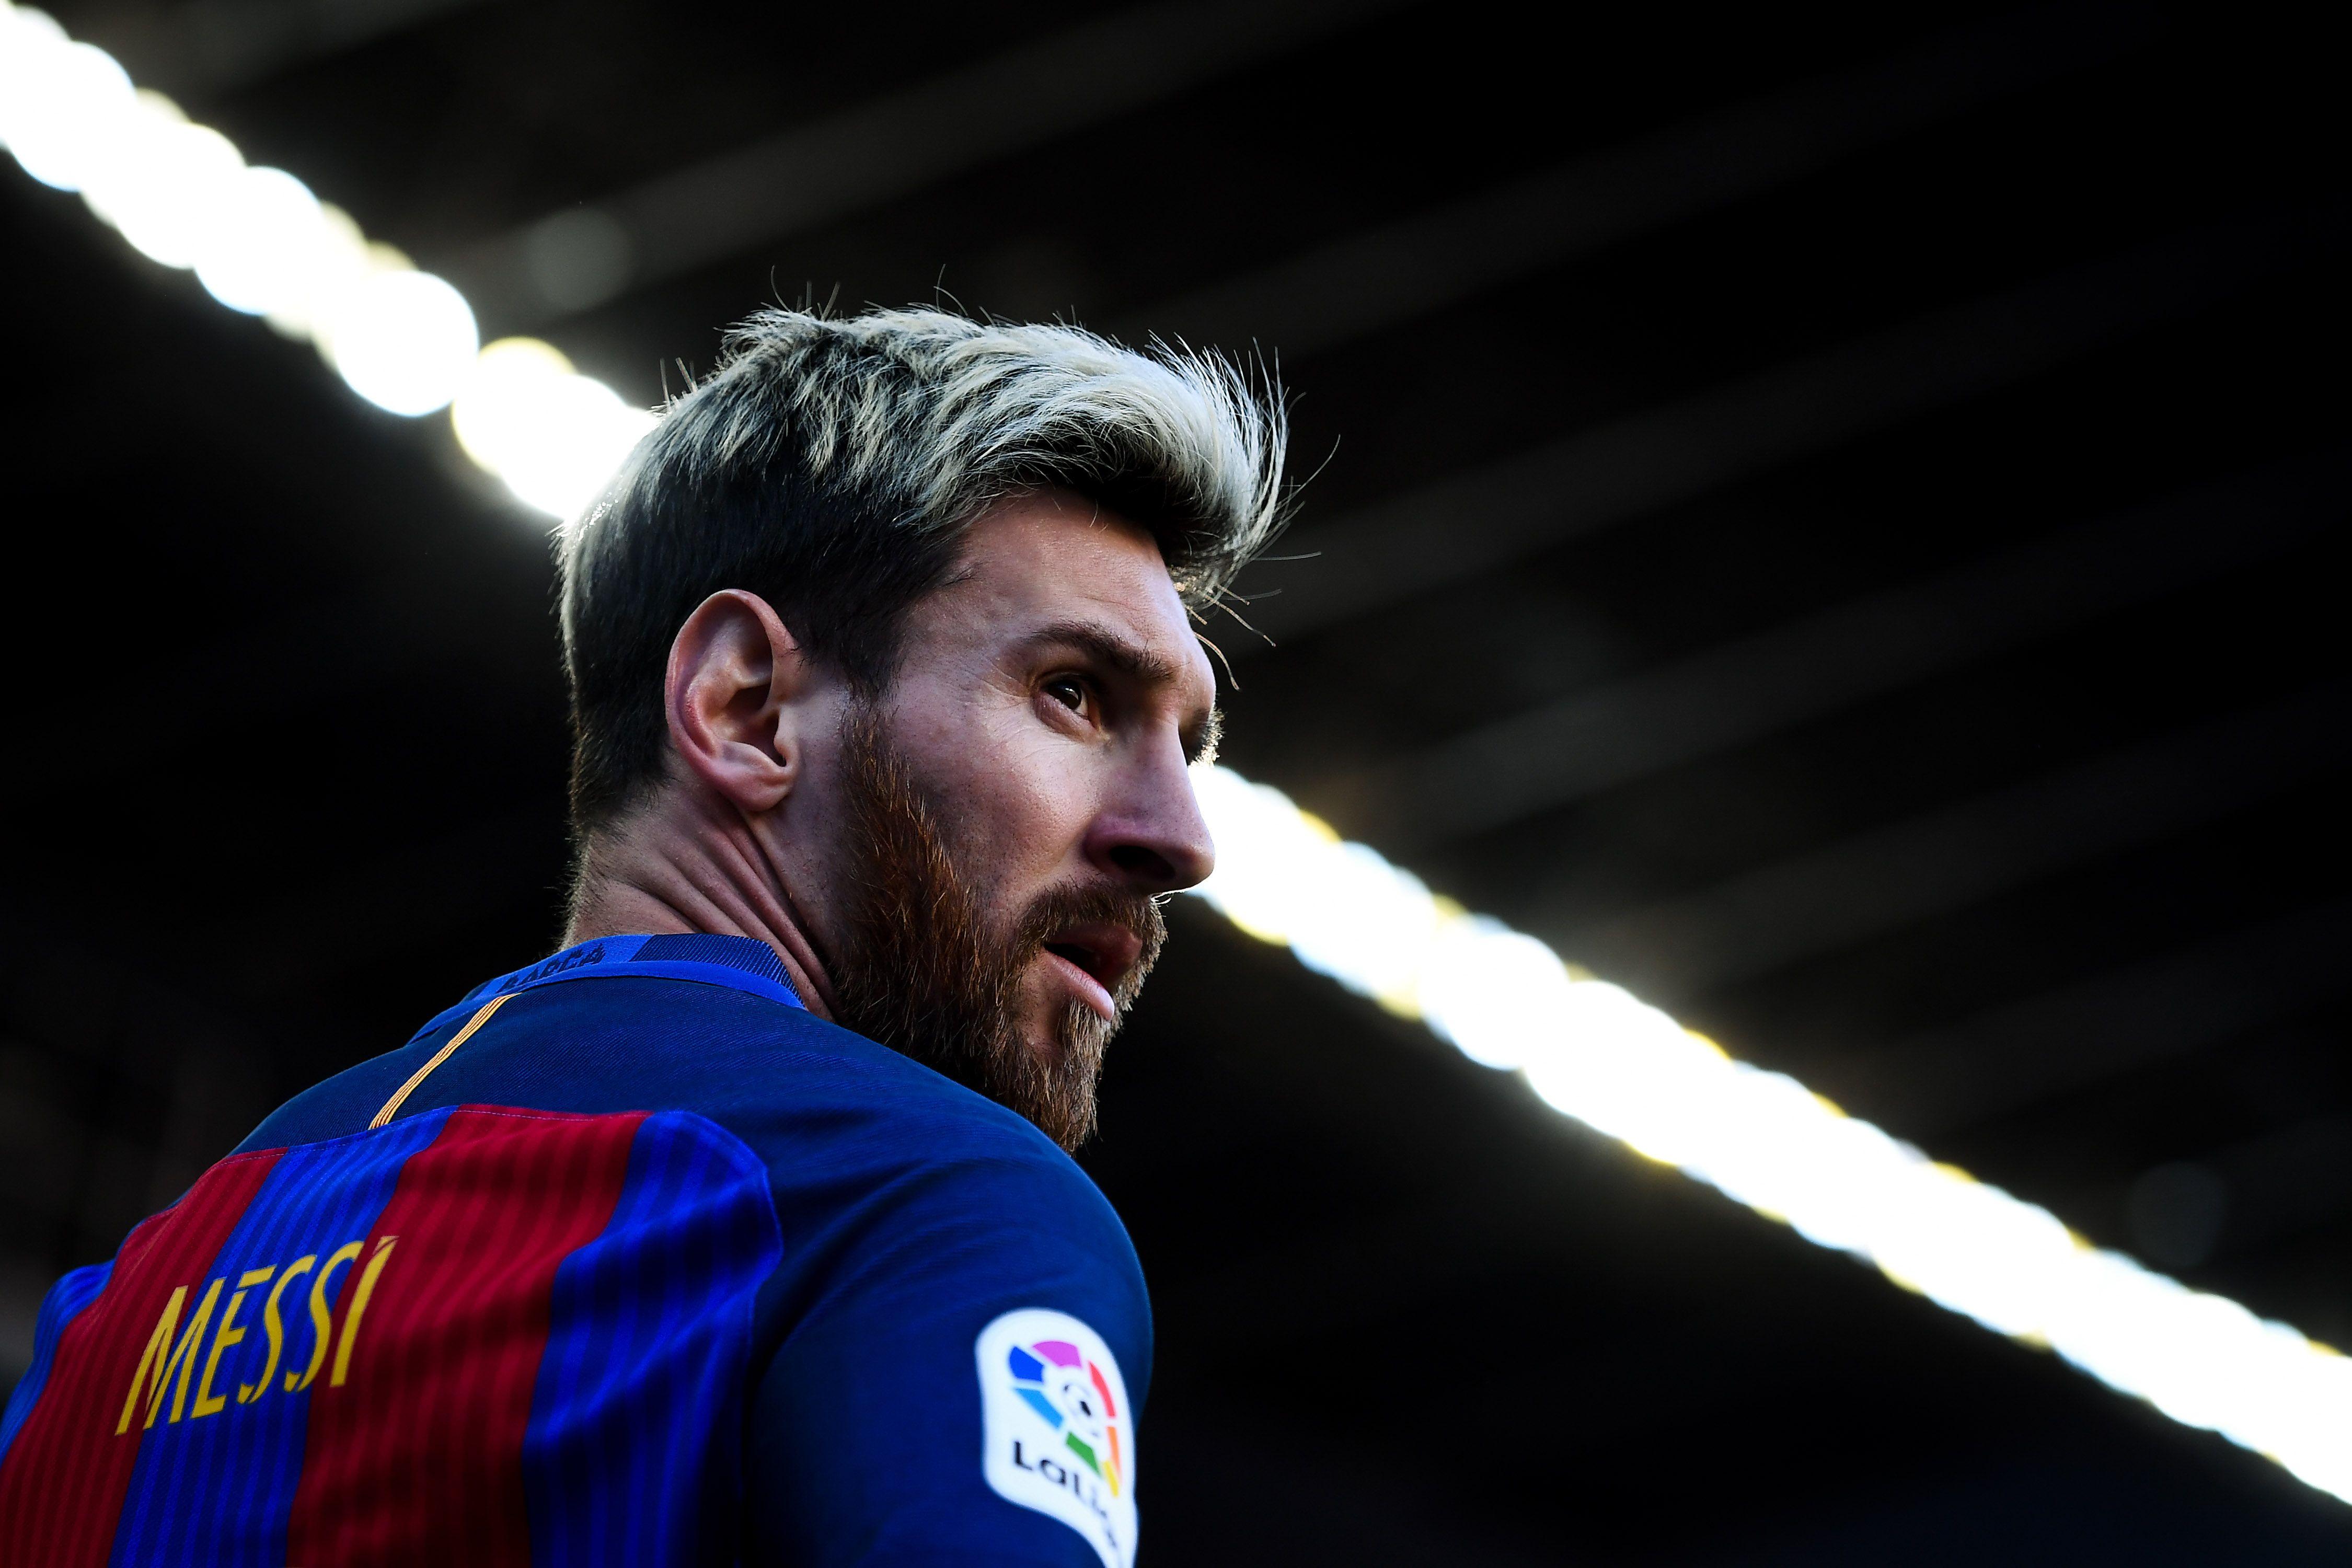 Được thiết kế đặc biệt với độ phân giải 4K Ultra HD, hình nền Messi sẽ mang đến cho bạn một trải nghiệm thực sự sống động với sự xuất sắc và tài năng đỉnh cao của Messi.